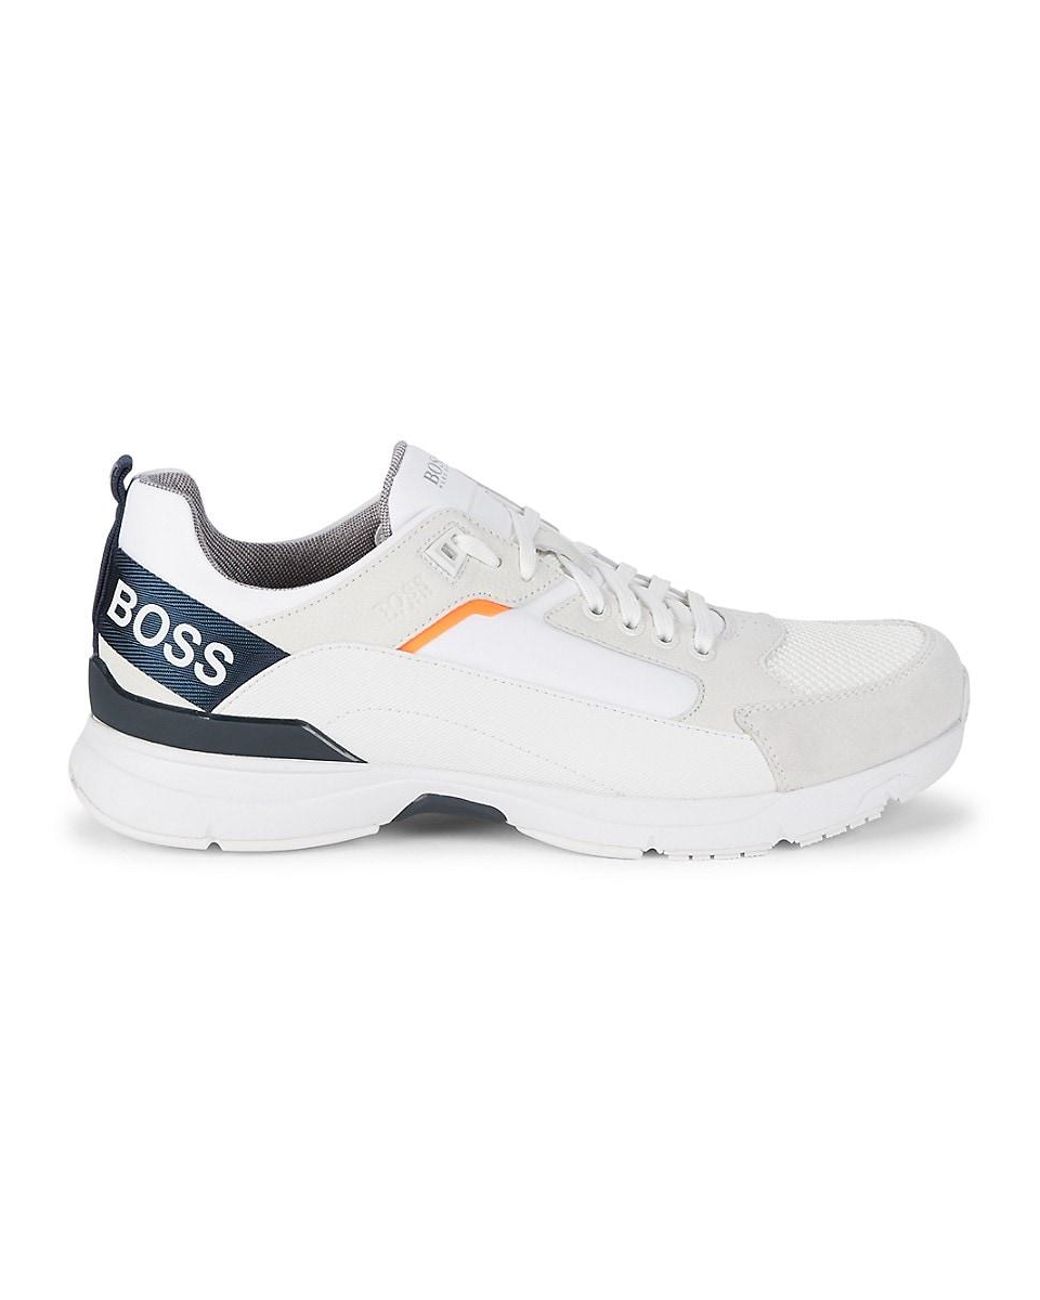 BOSS by HUGO BOSS Velocity Logo Sneakers in White for Men | Lyst